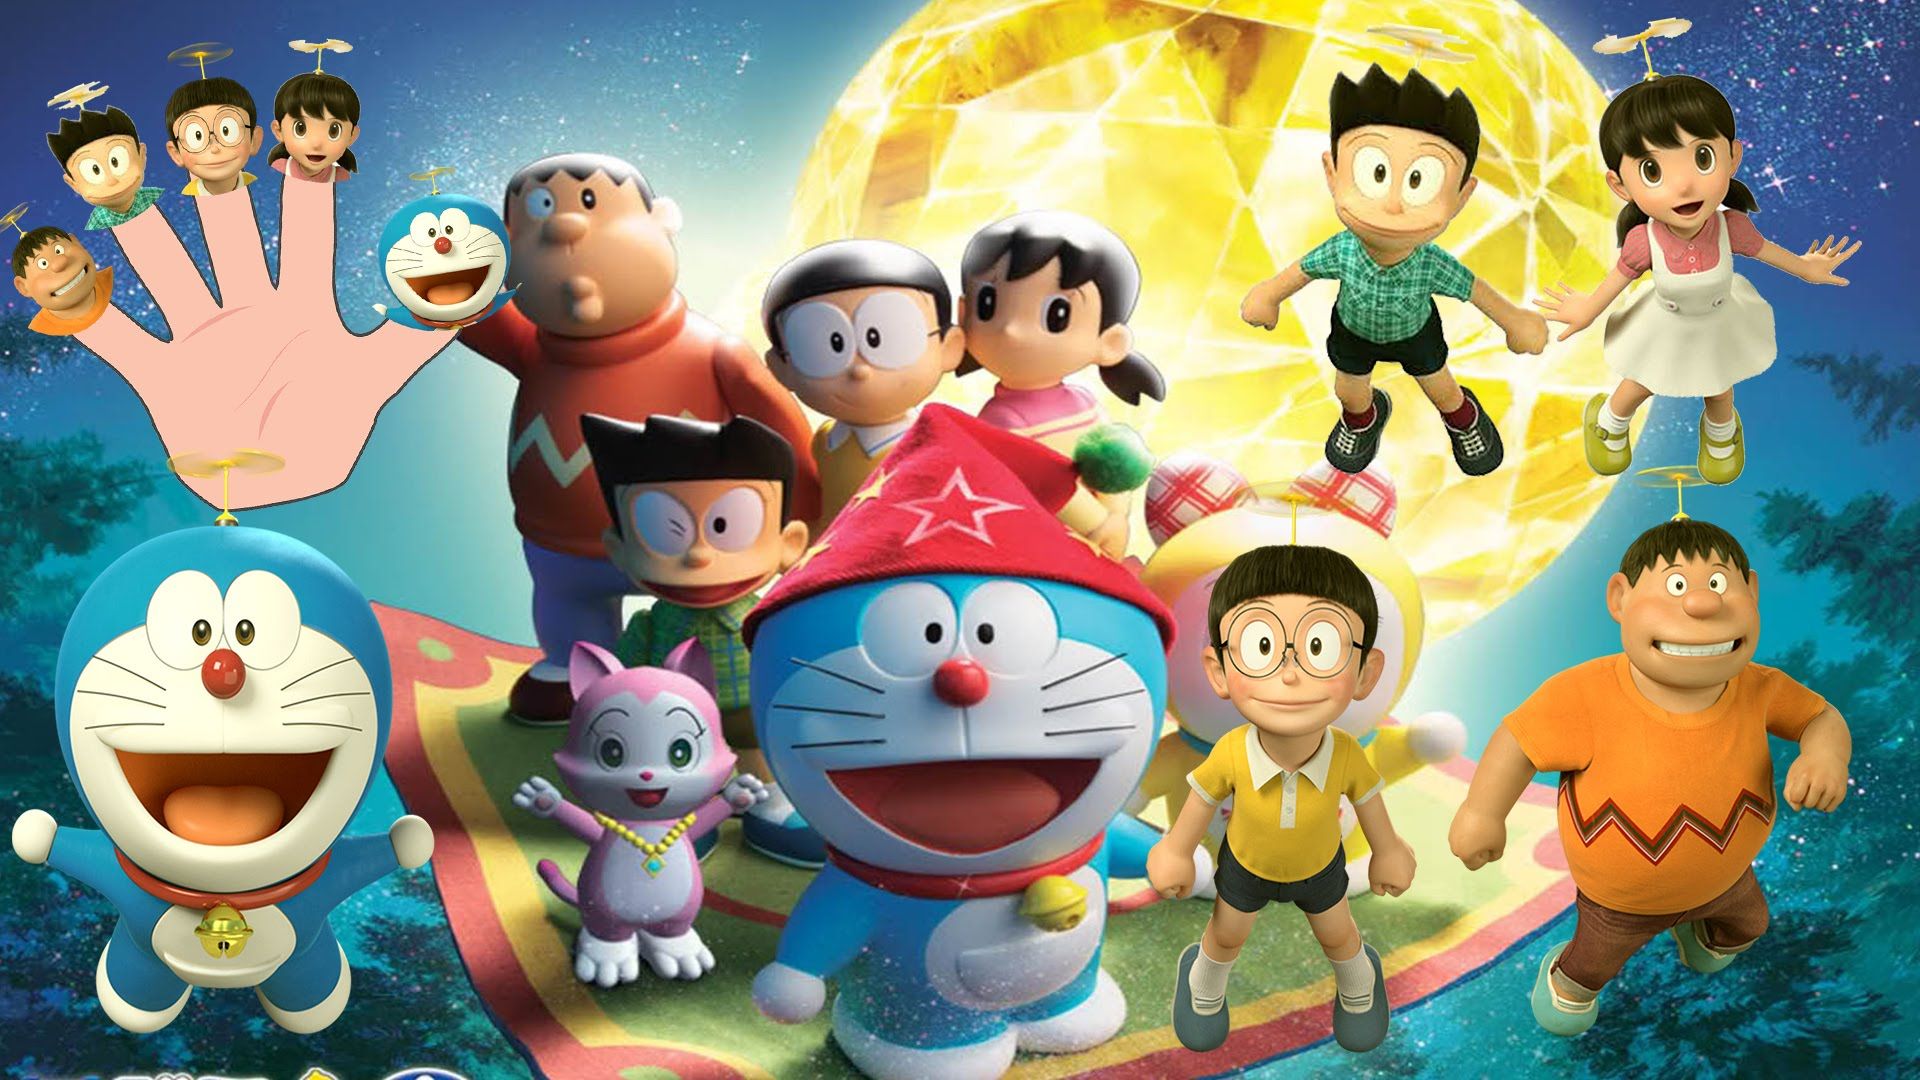 Tải ngay hình nền Doraemon chất lượng cao để cùng hưởng thụ những hình ảnh đáng yêu và hài hước nhất! Bạn sẽ được chiêm ngưỡng những bức tranh điện ảnh sinh động và sâu lắng nhất trong phong cách dễ thương chỉ có tại Doraemon.